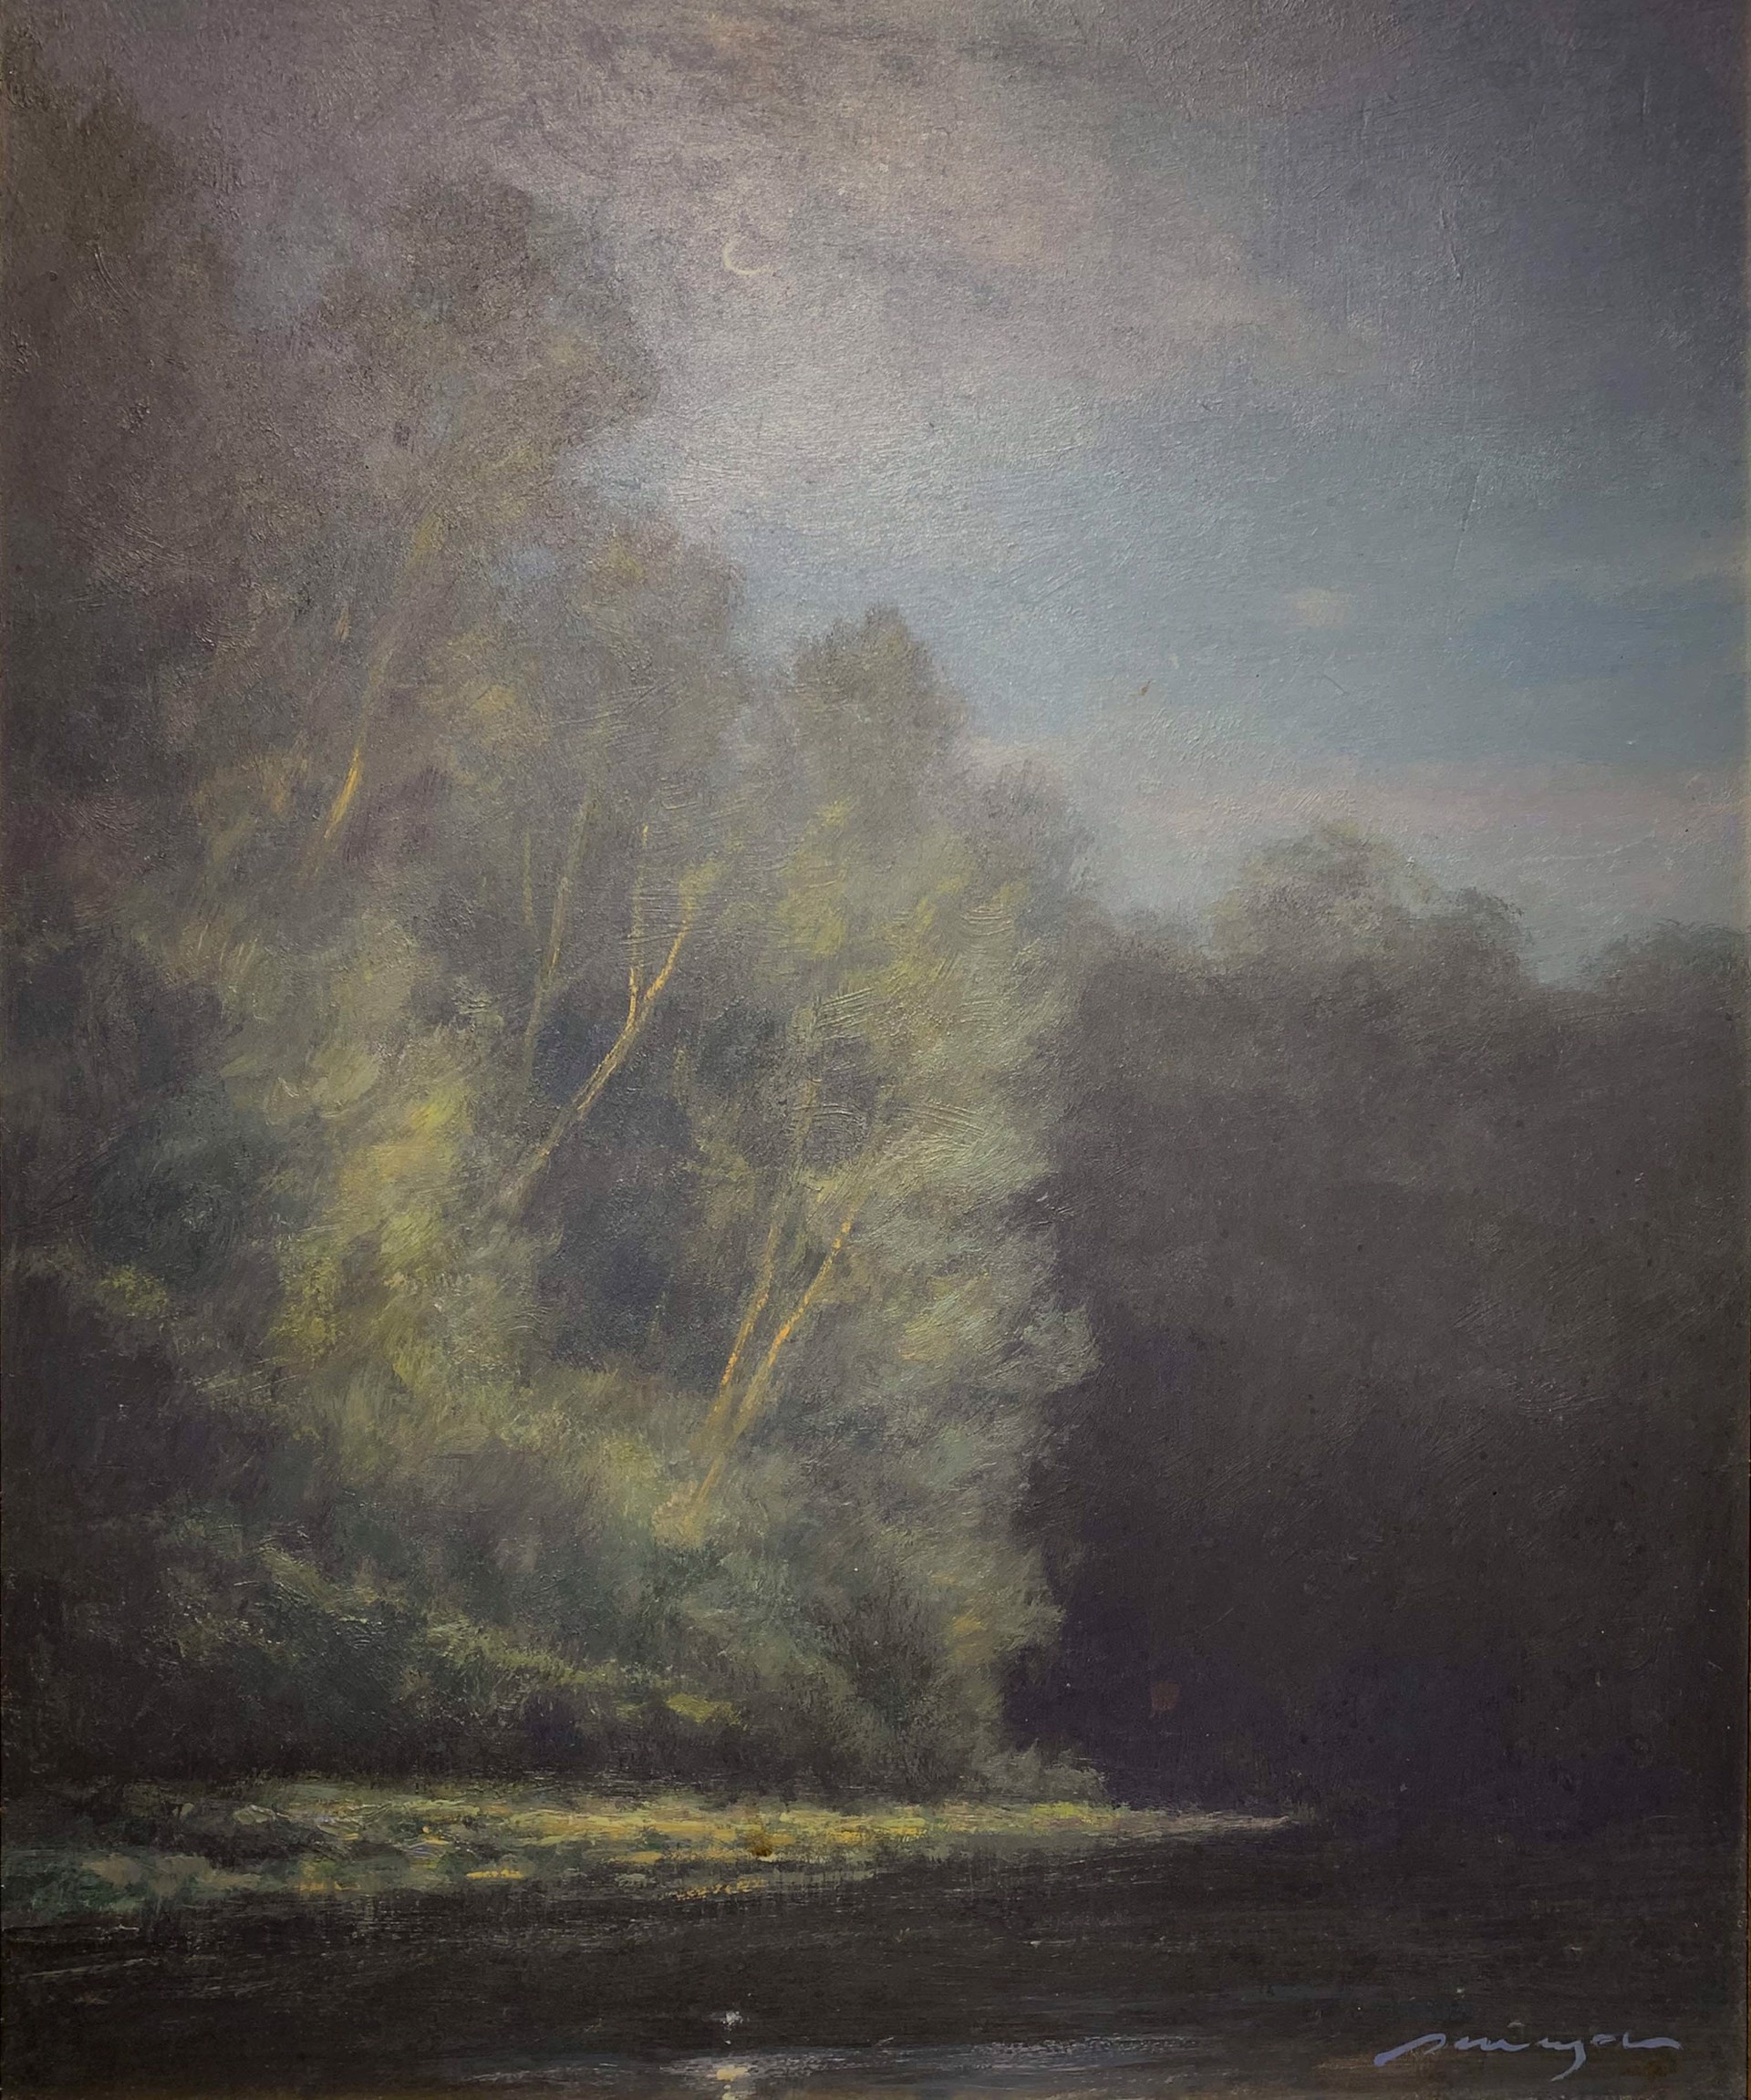 Wekiva River Moonlight by Peter Pettegrew